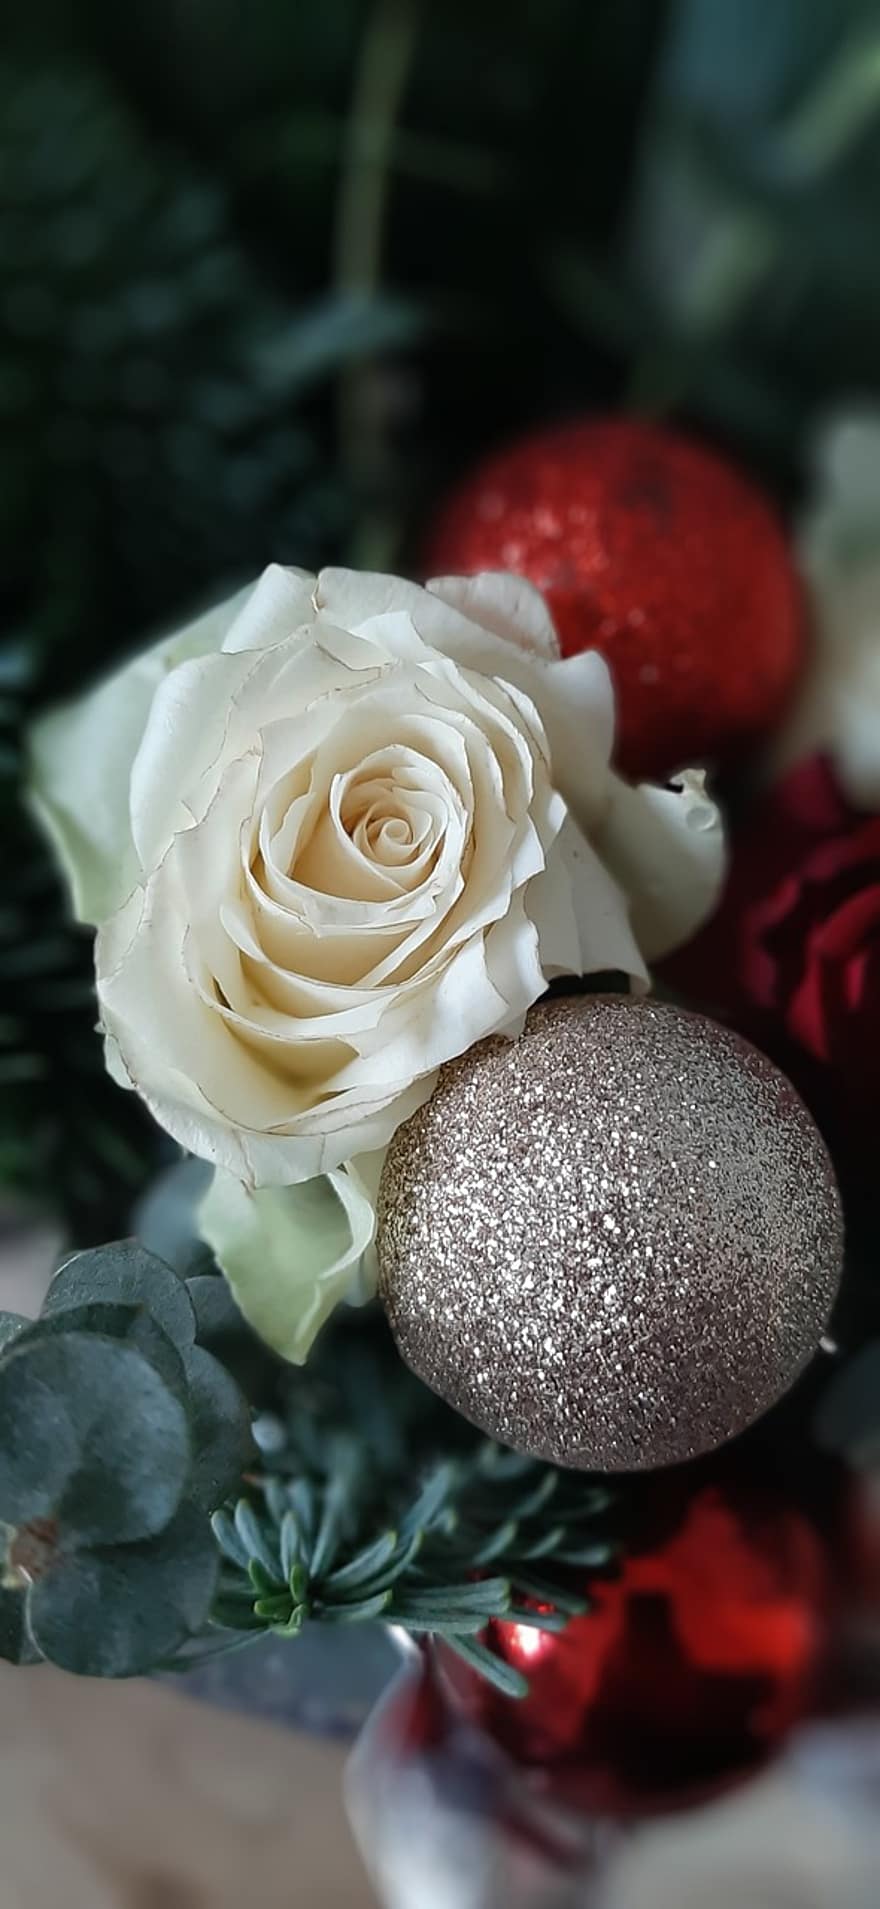 الوردة ، عيد الميلاد ، كرة عيد الميلاد ، قطعة عيد الميلاد ، زهرة ، ترتيب الزهور ، هدية مجانية